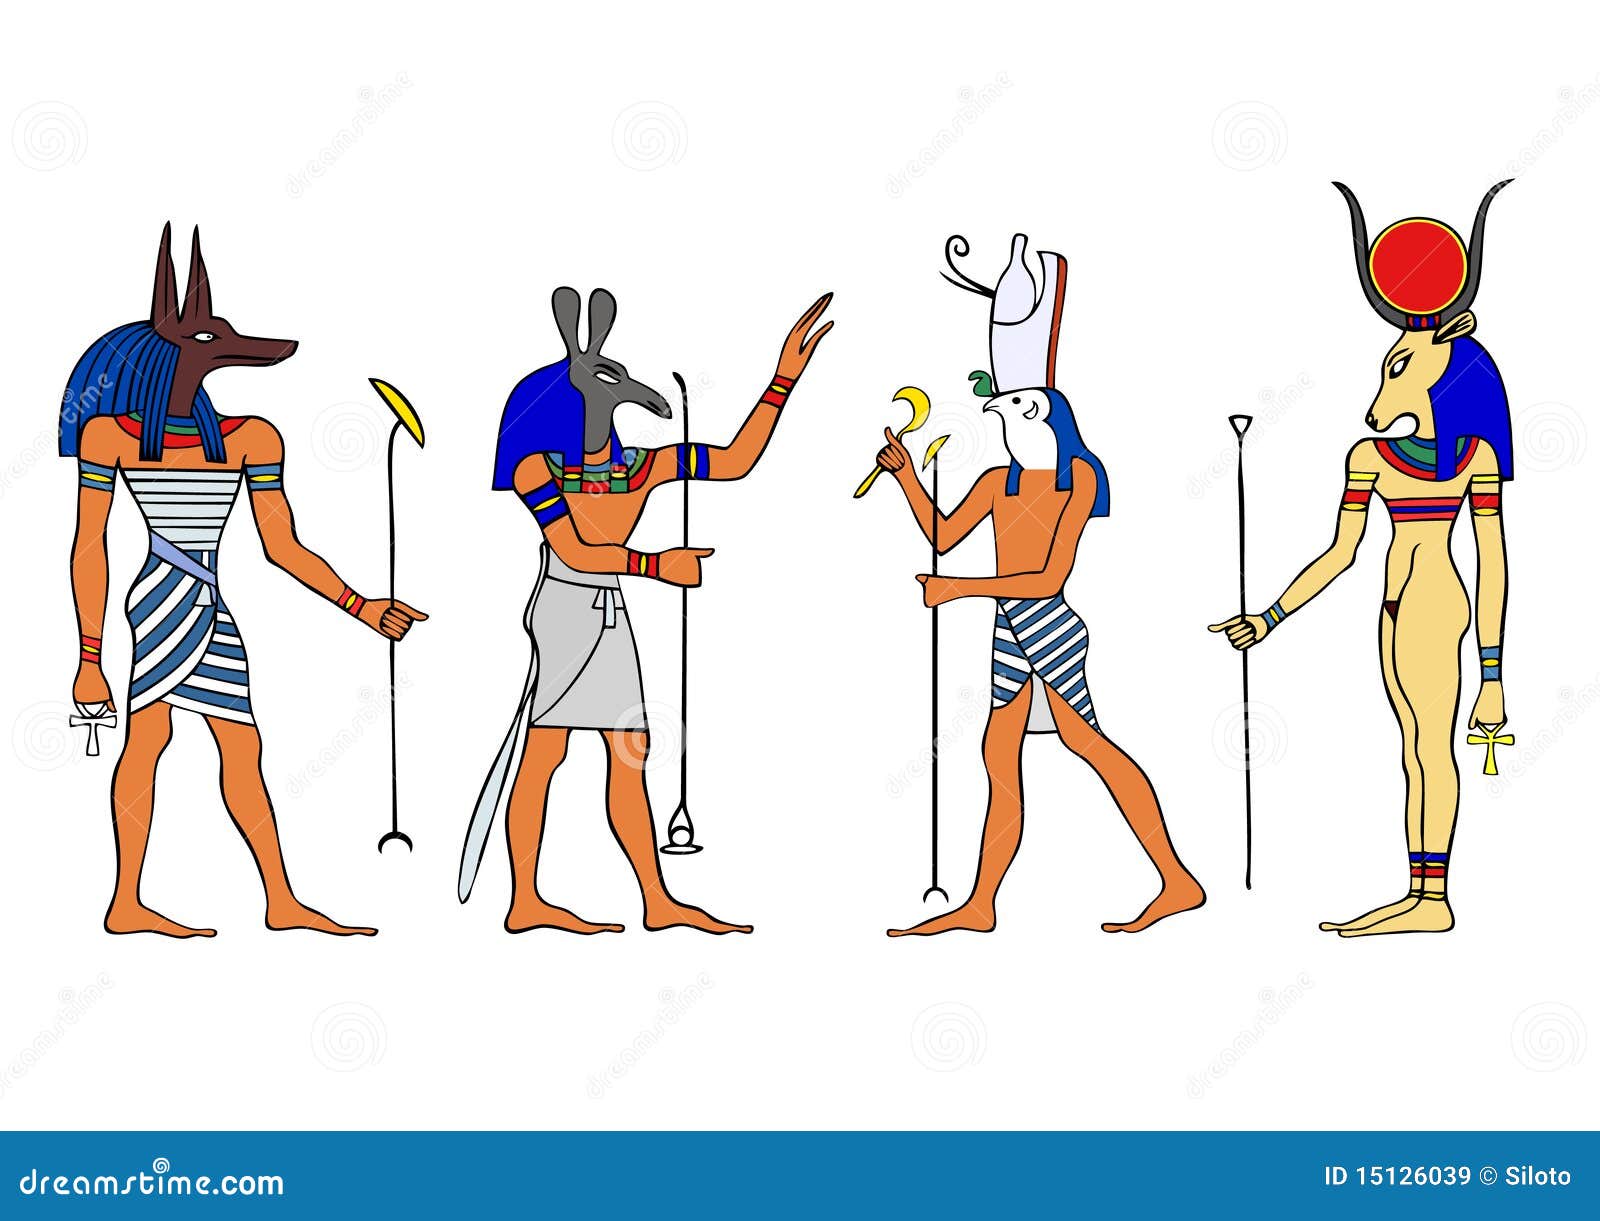 Agyptische Gotter Und Gottin Stock Abbildung Illustration Von Gottin Agyptische